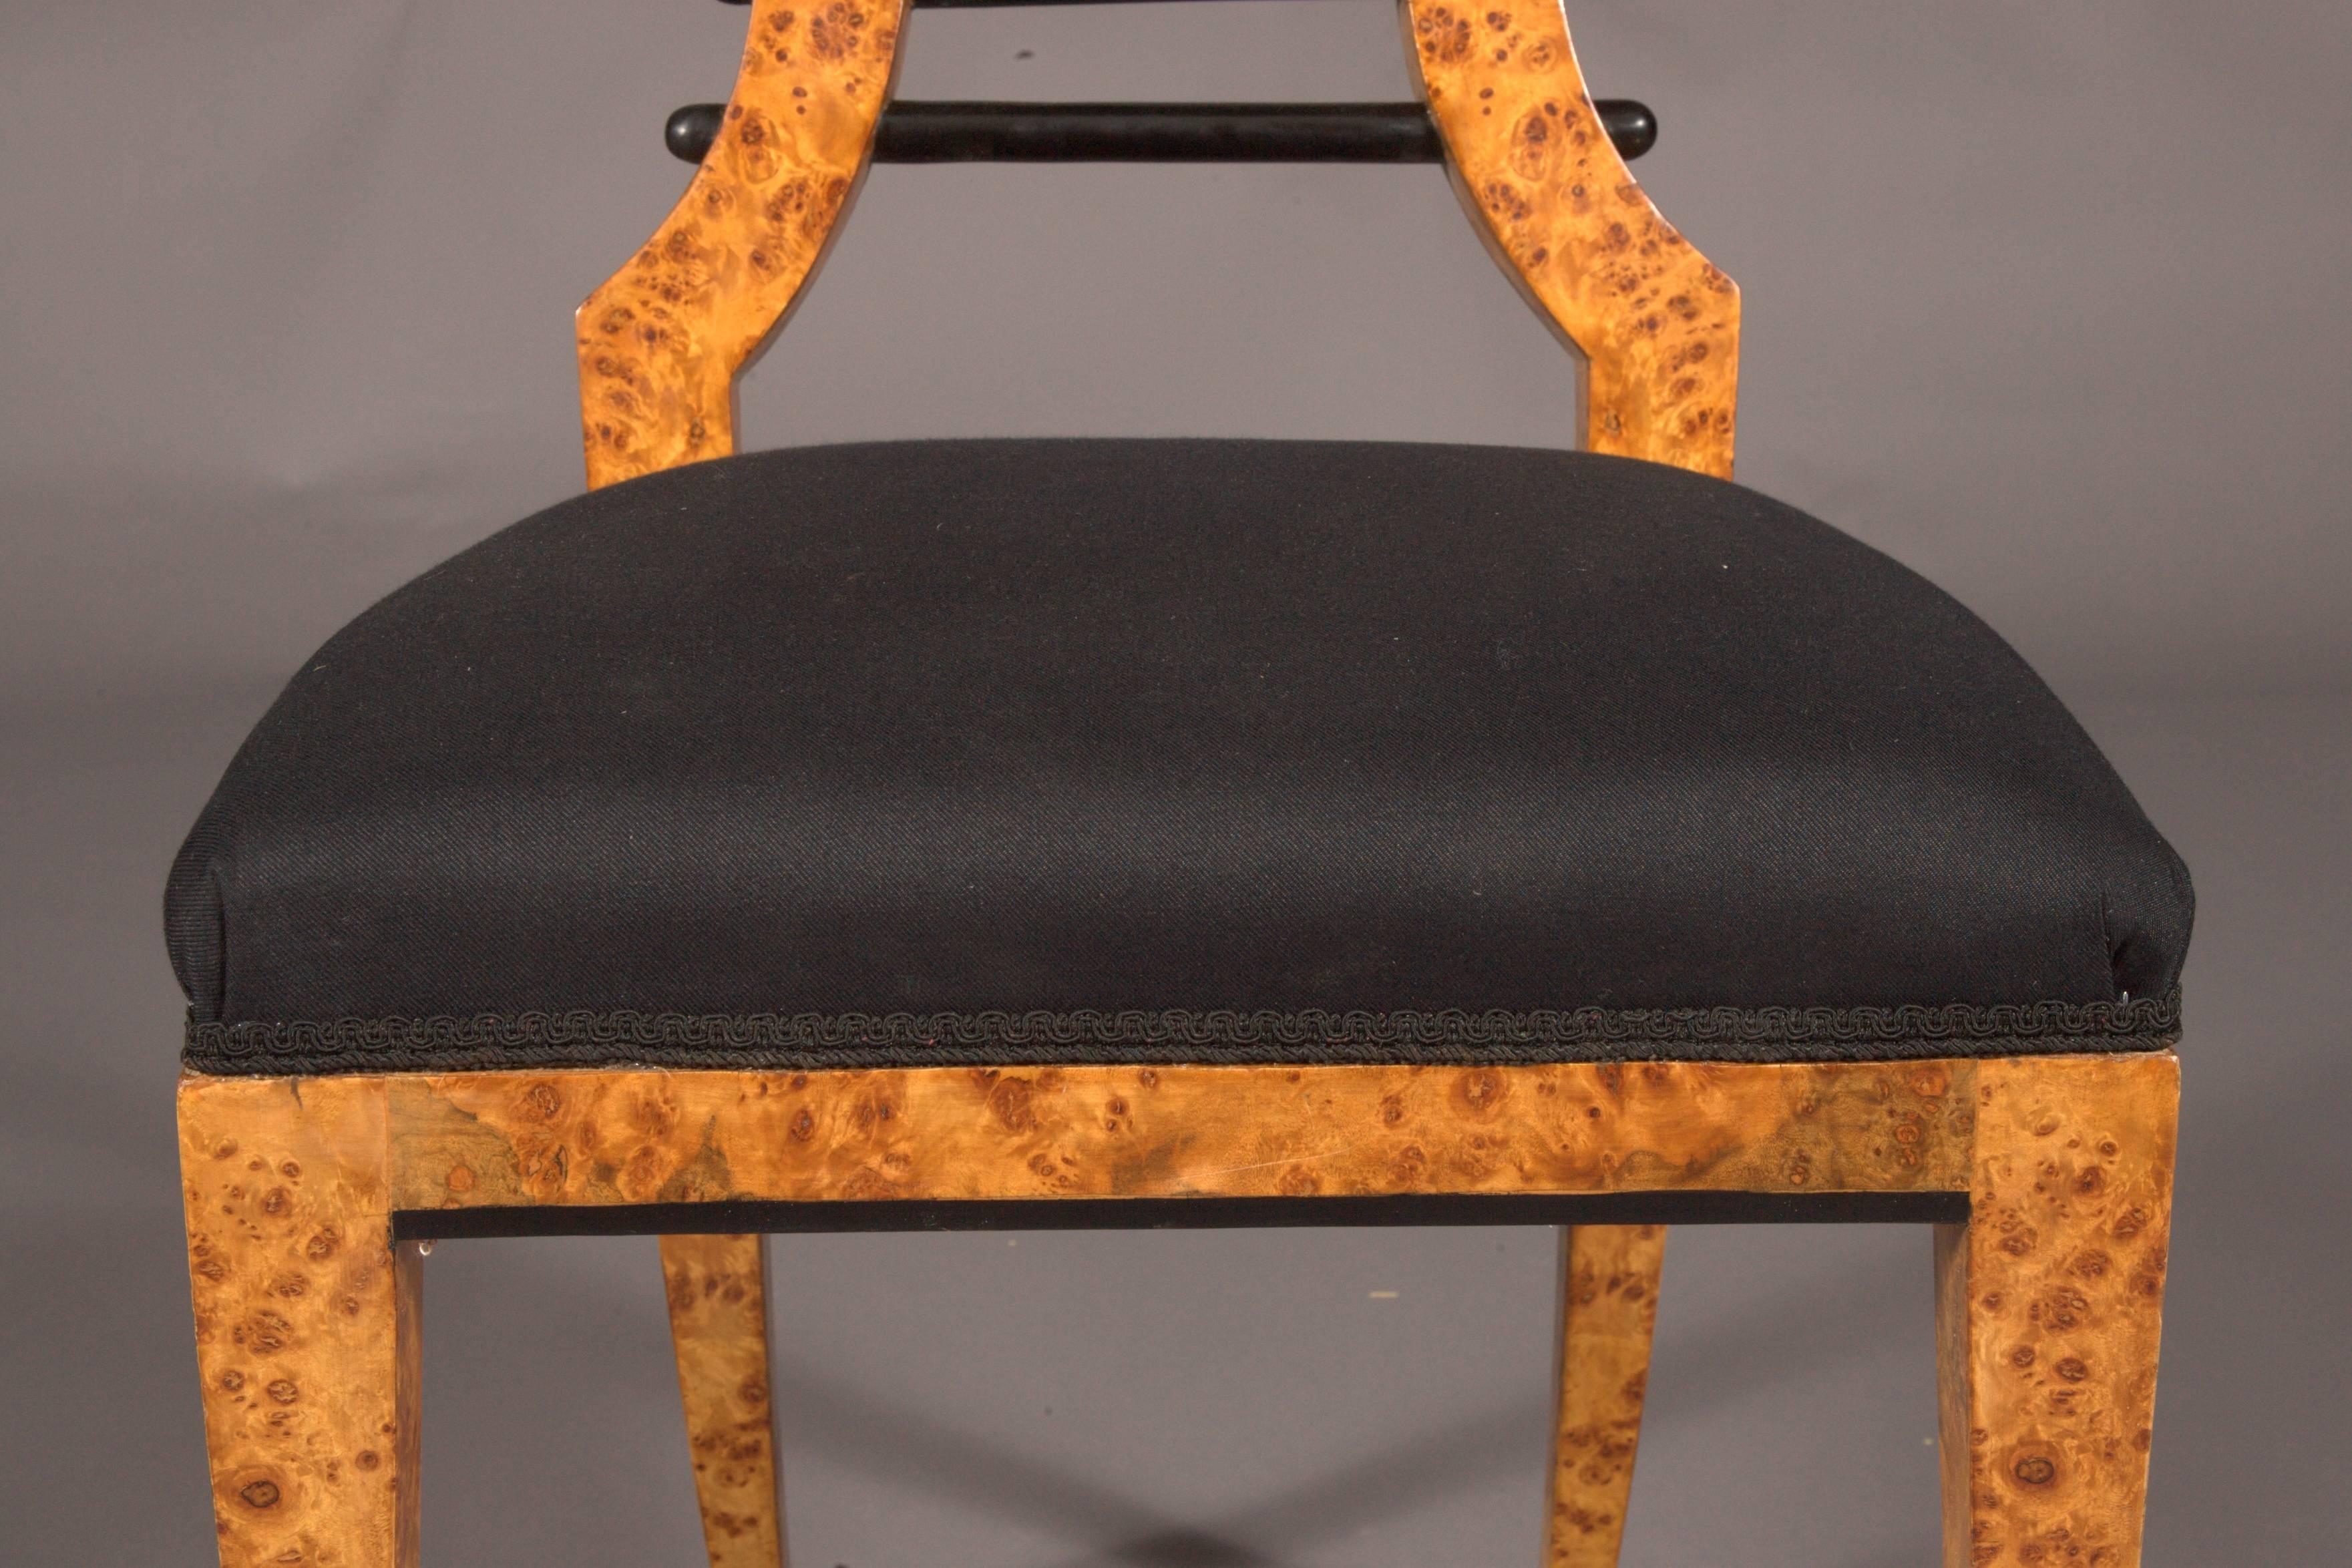 German Vienna Biedermeier Chair after antique Josef Danhauser birdie maple veneer